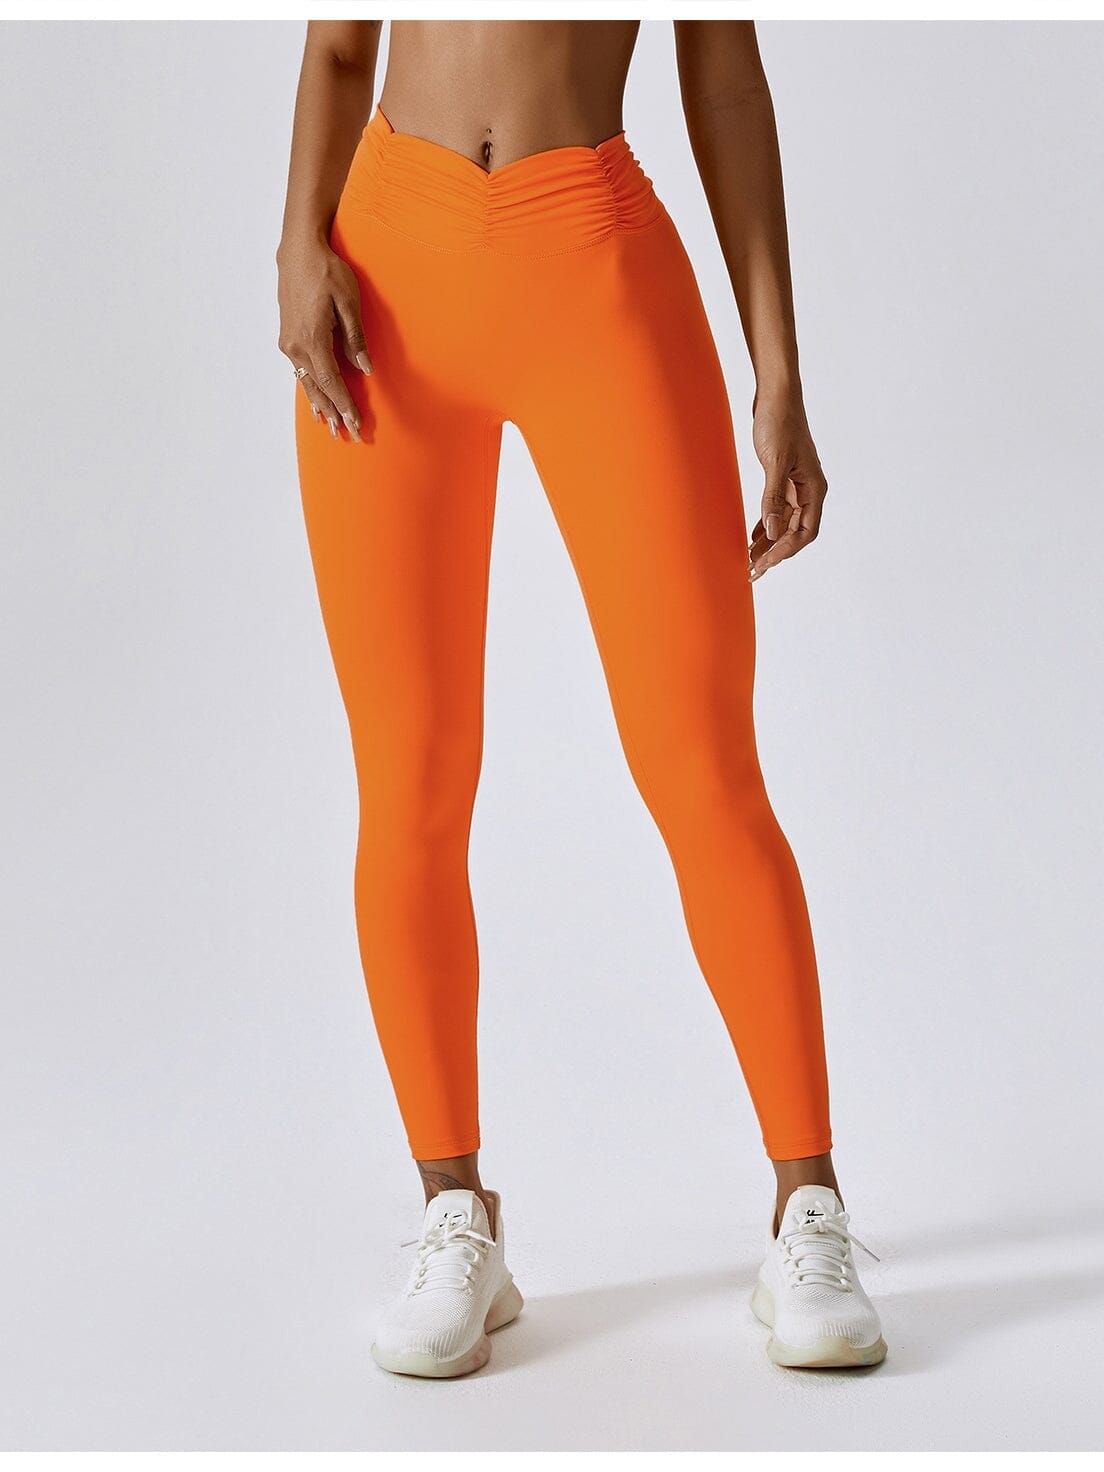 Legging CrossFit, Fitness, Push Up - Julia Leggings helankezatrening.com sa Orange 